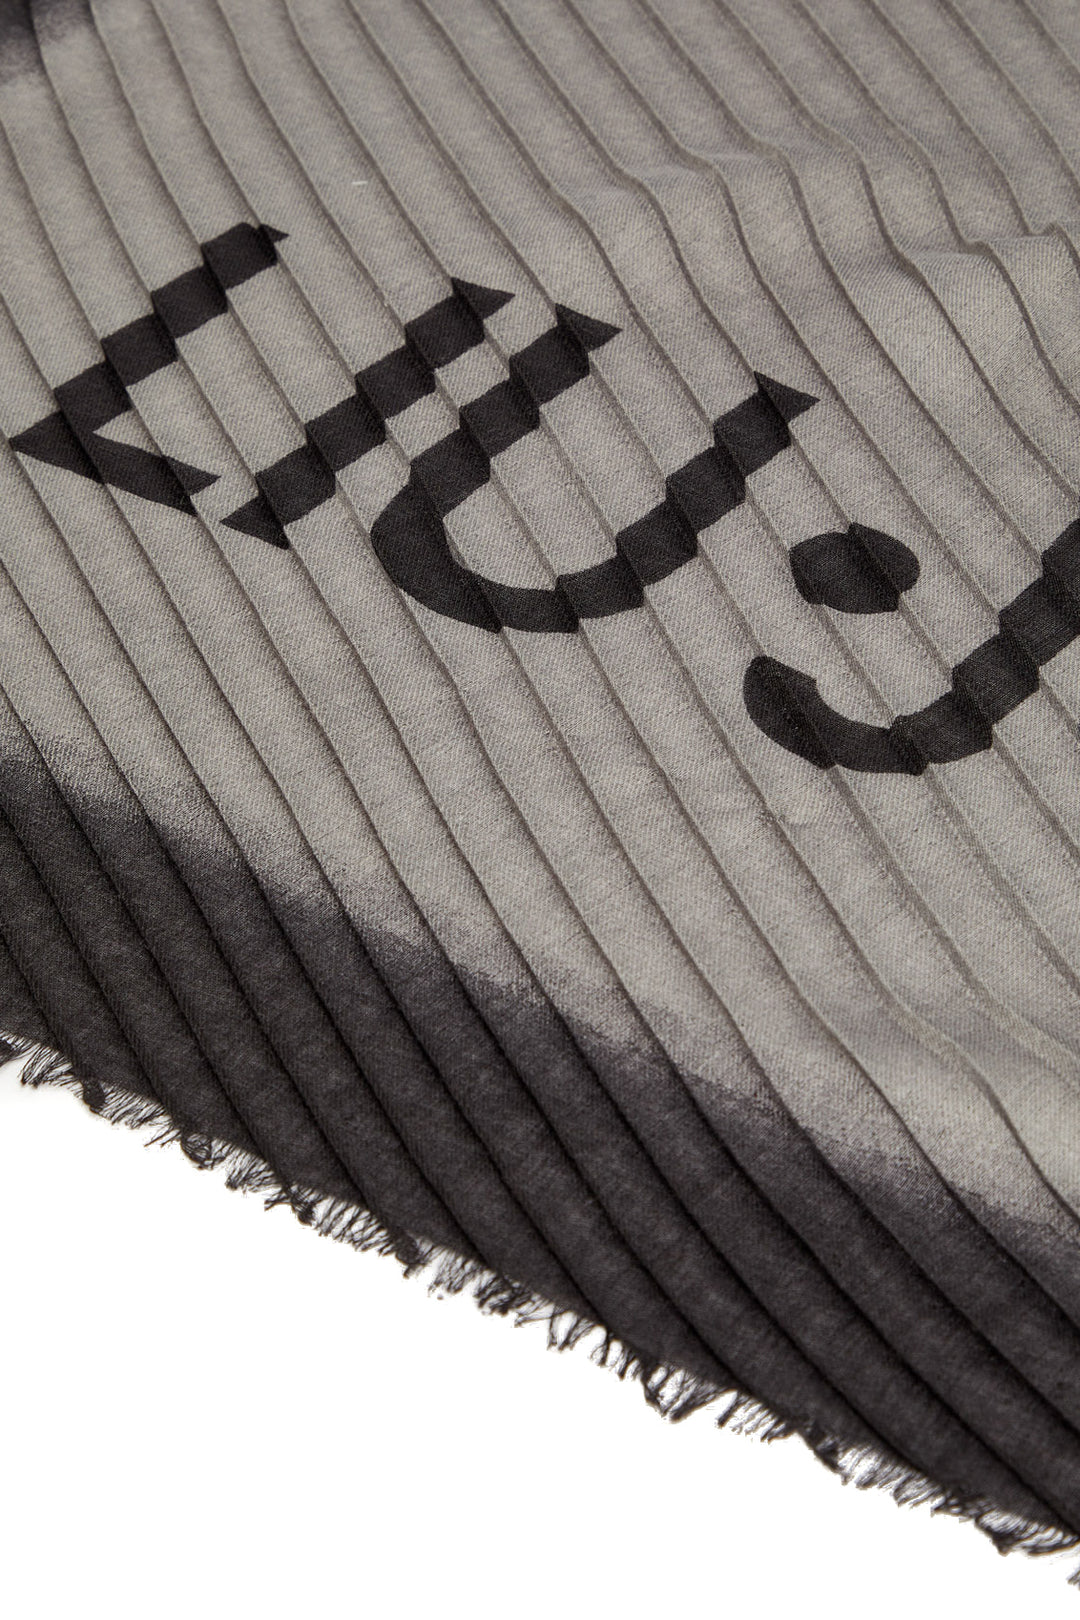 LIU JO Stola nera ecosostenibile degradè con logo - Mancinelli 1954